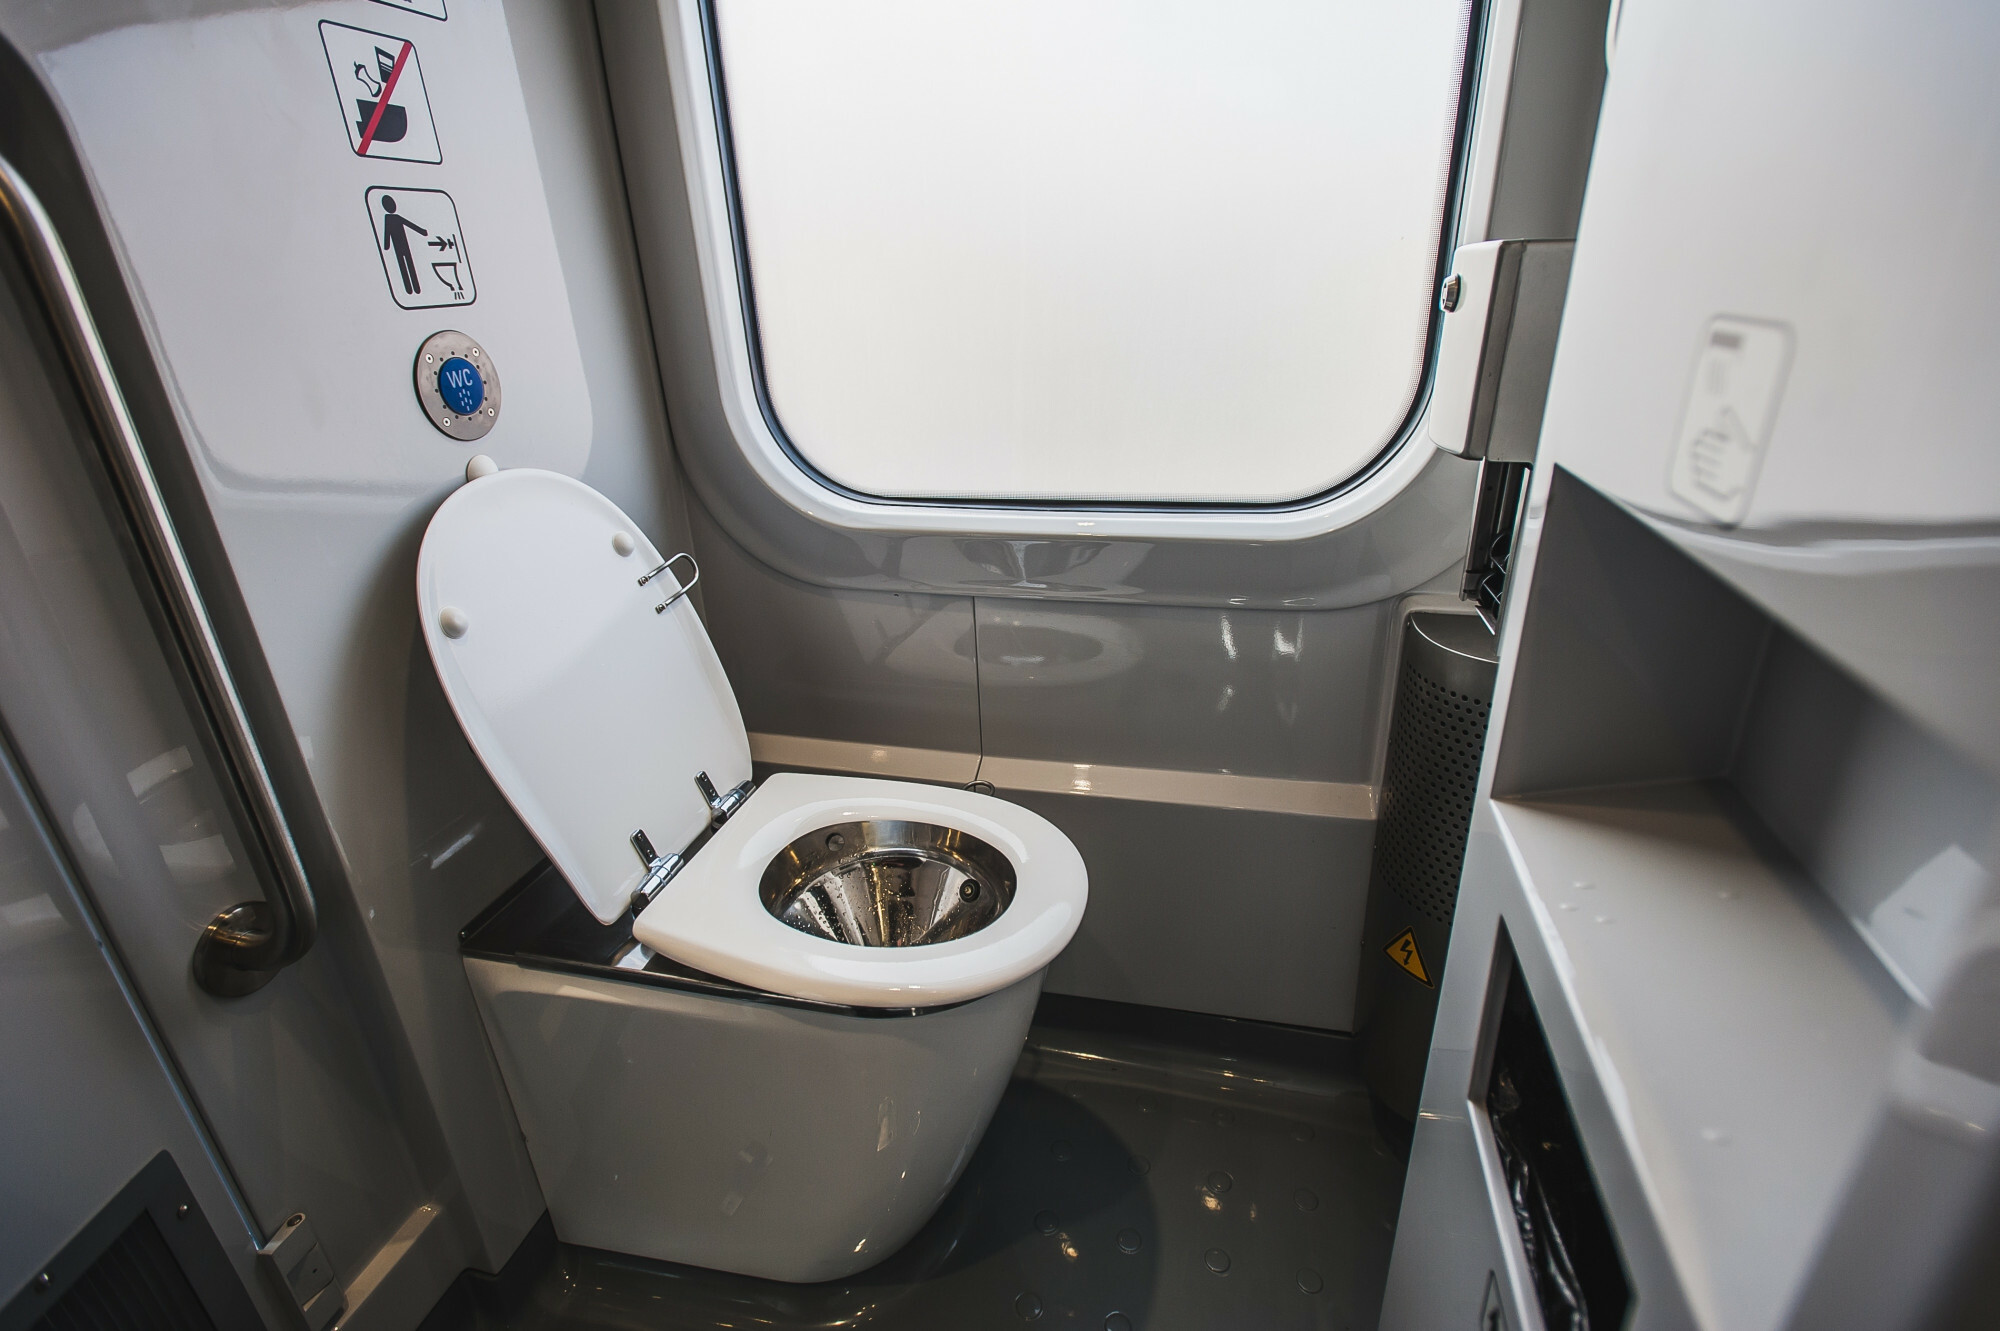 Toaletowa rewolucja na kolei. Tory będą czyste